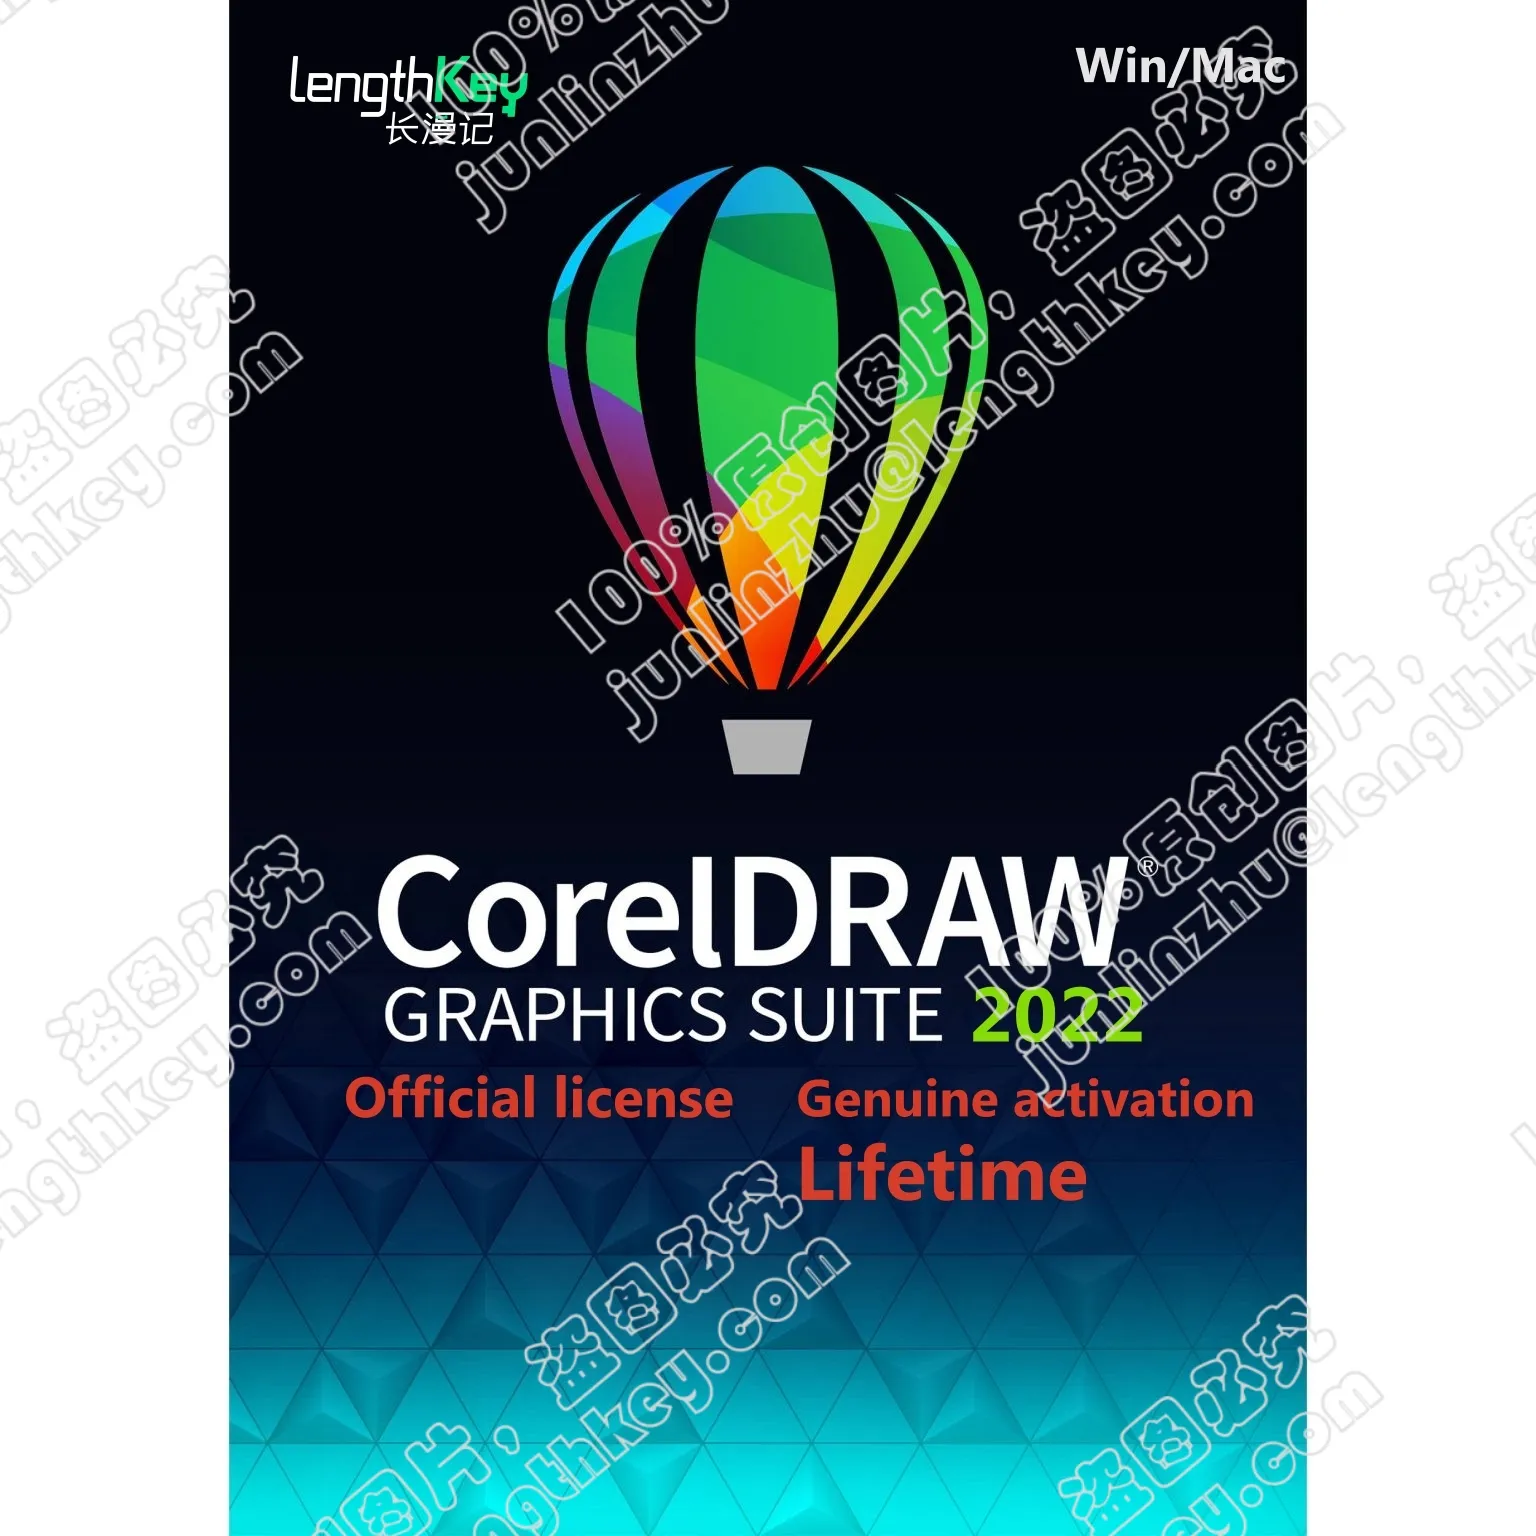 ชุดใบอนุญาตอย่างเป็นทางการ Coreldraw ชุดกราฟิก2022การแก้ไขภาพเค้าโครงซอฟต์แวร์ออกแบบภาพประกอบเวกเตอร์สำหรับ Win/Mac